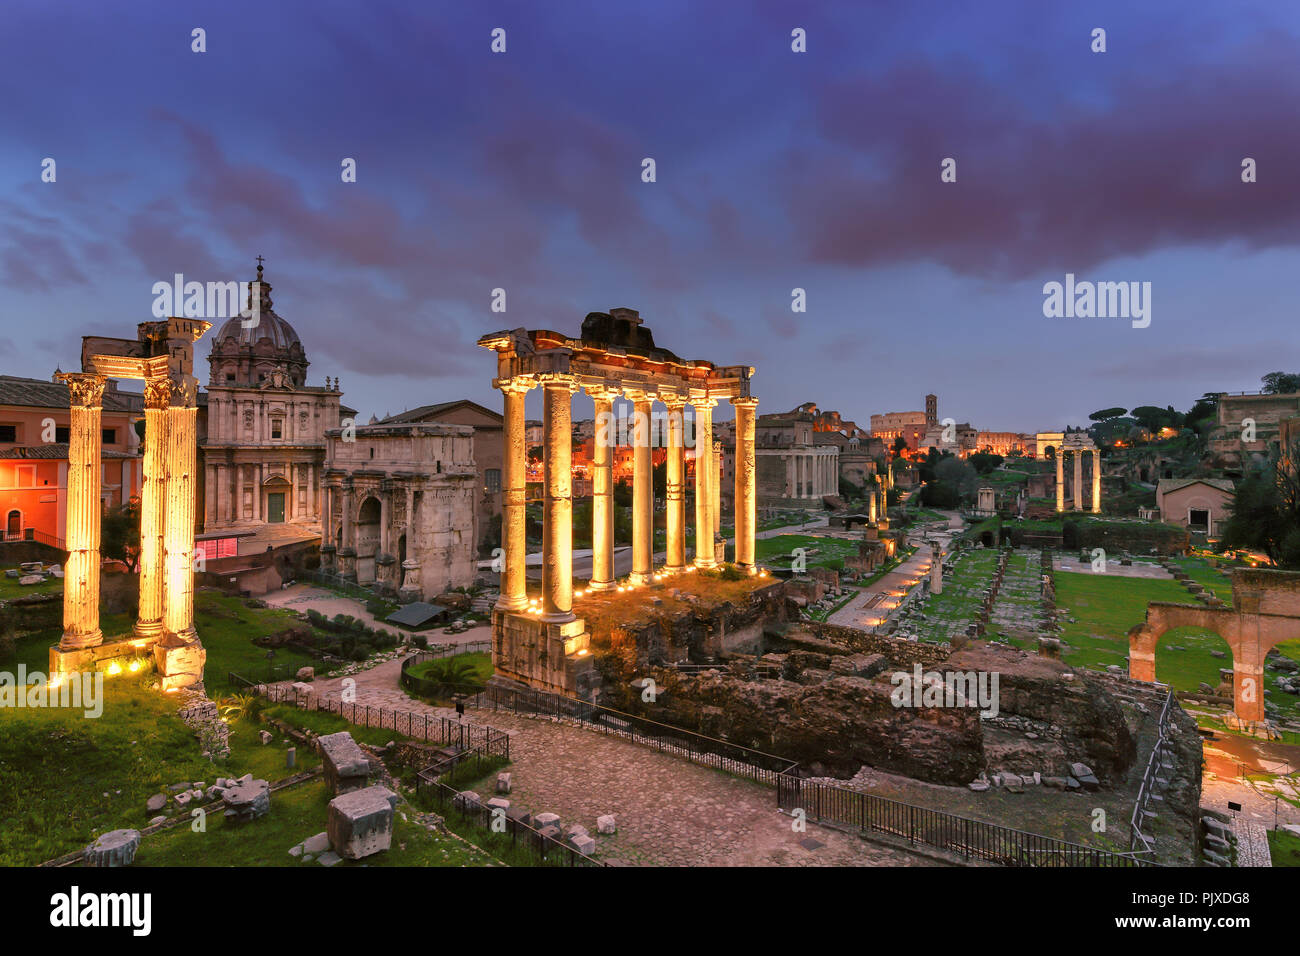 Ruines du forum de romain dans la nuit à Rome, Italie. Banque D'Images